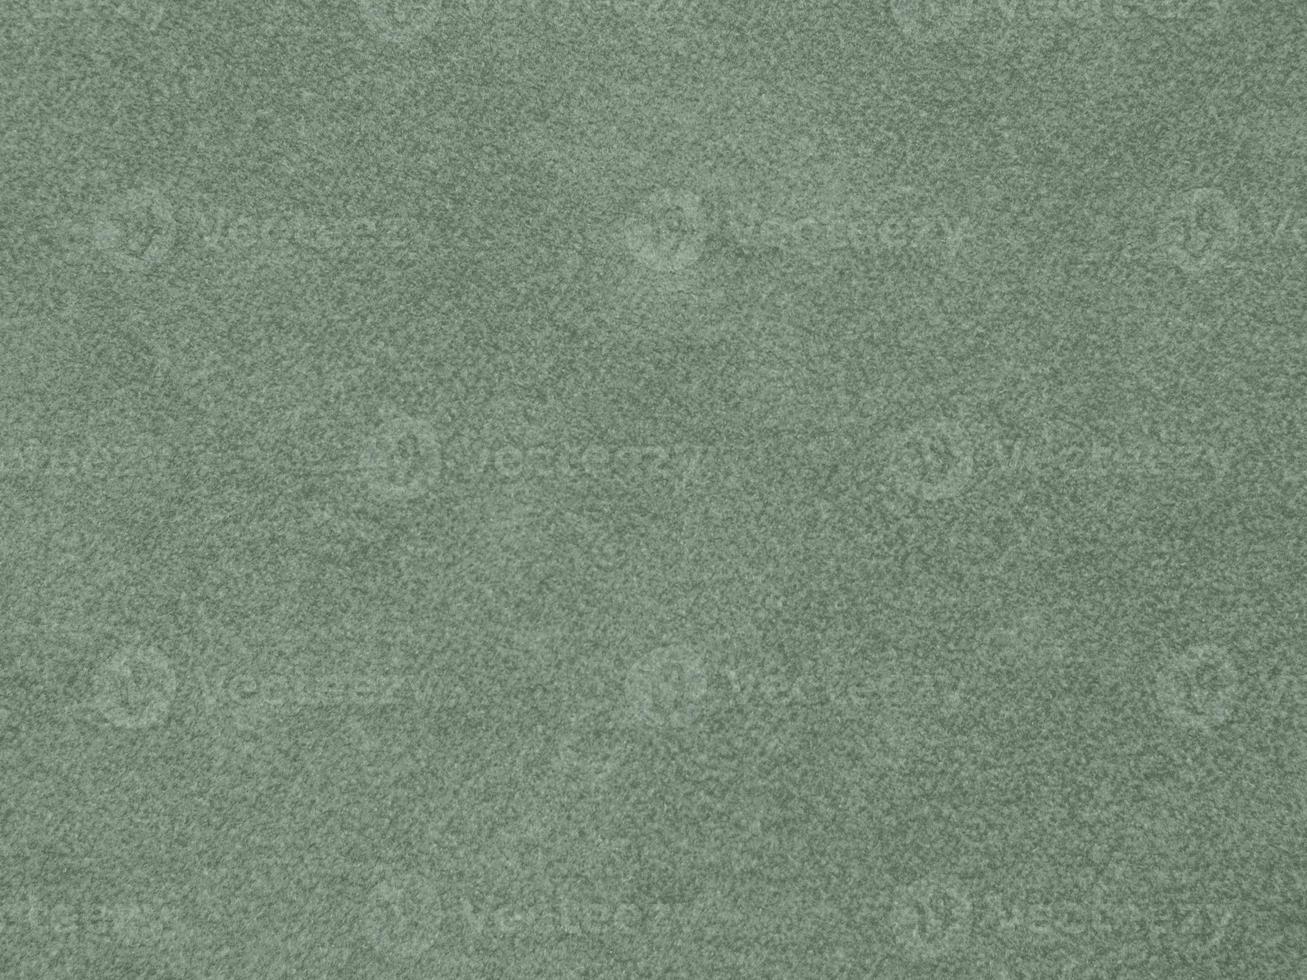 textura de tecido de veludo de cor verde oliva usada como plano de fundo. fundo de tecido verde-oliva claro de material têxtil macio e liso. há espaço para o texto. foto